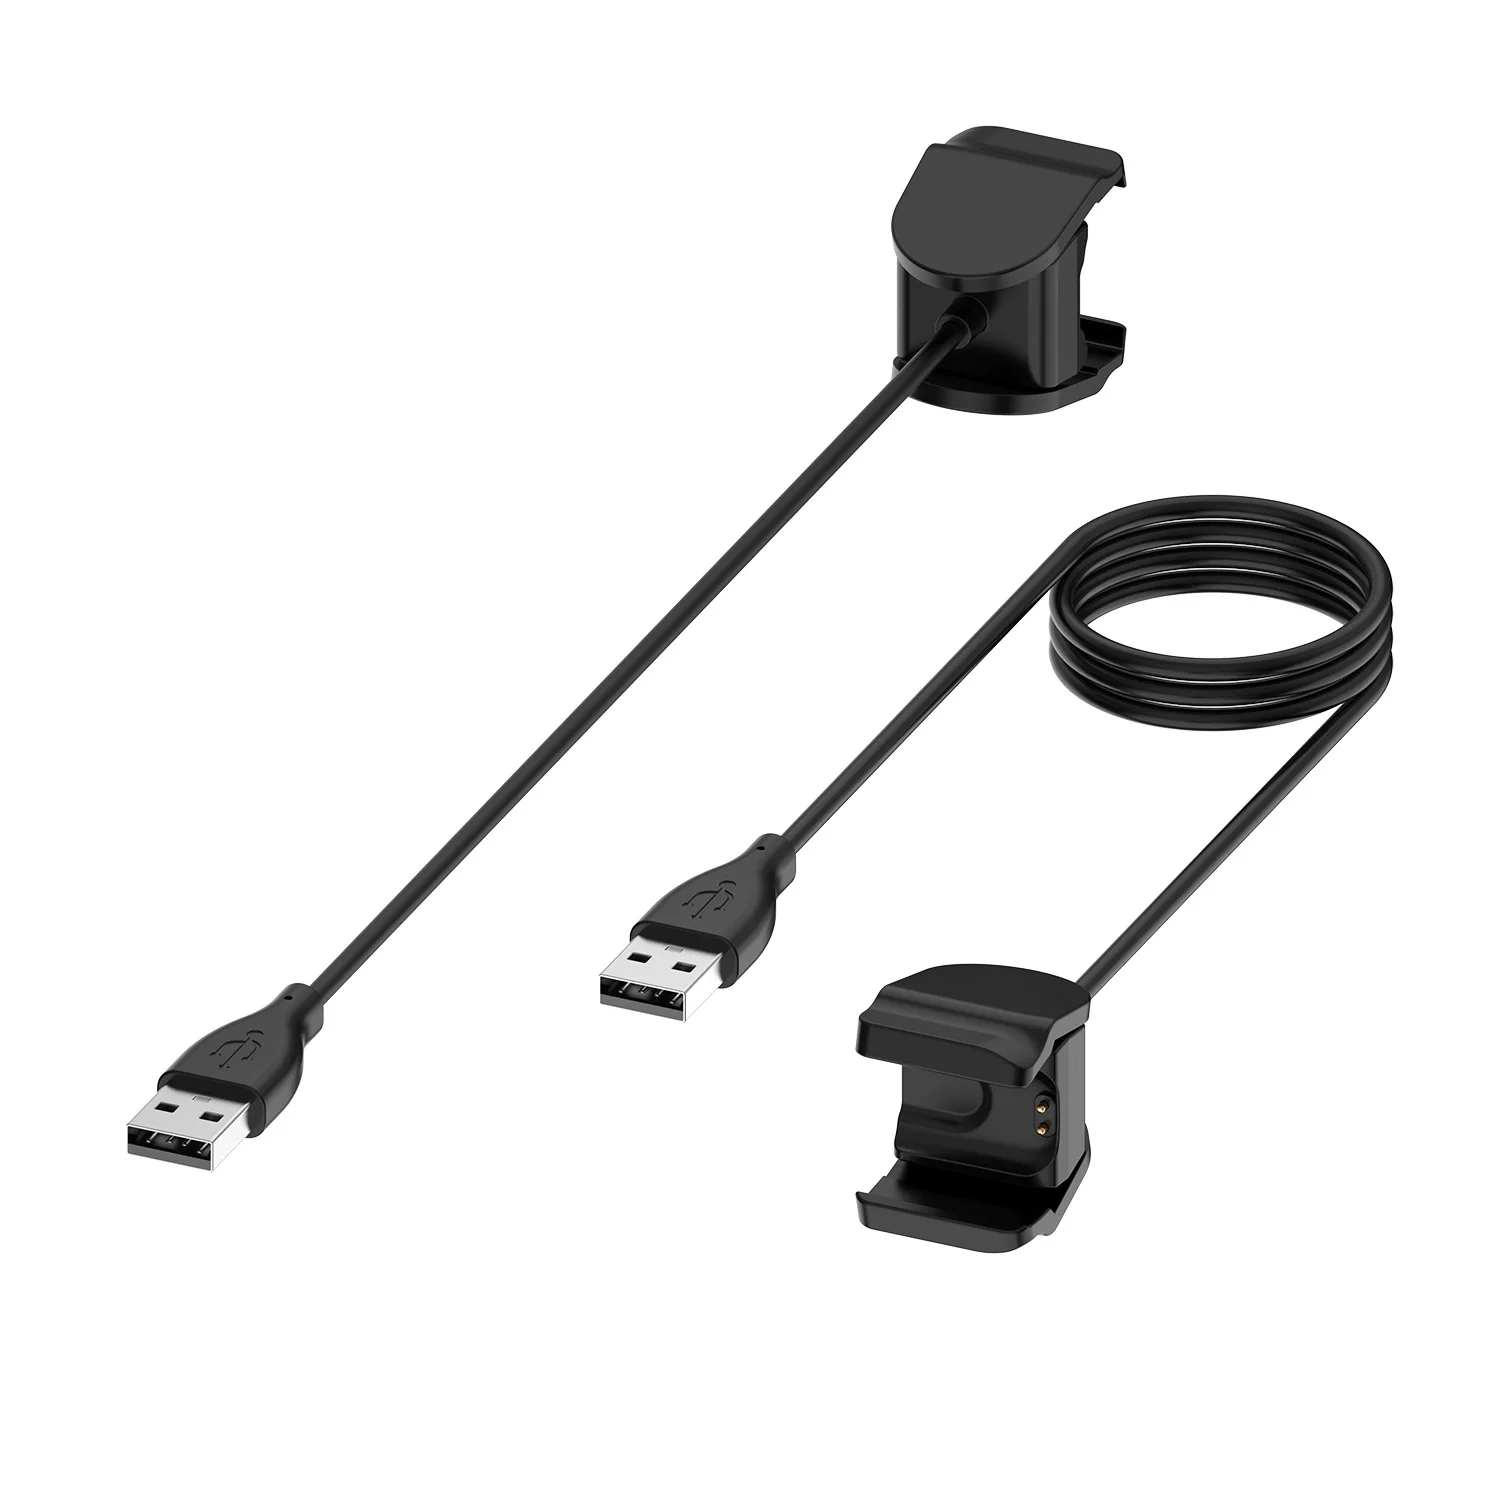 Usb-кабель для зарядки Xiaomi mi Band 4 без разборки кабель зарядное устройство mi Band 4 адаптер зарядное устройство смарт-часы аксессуары